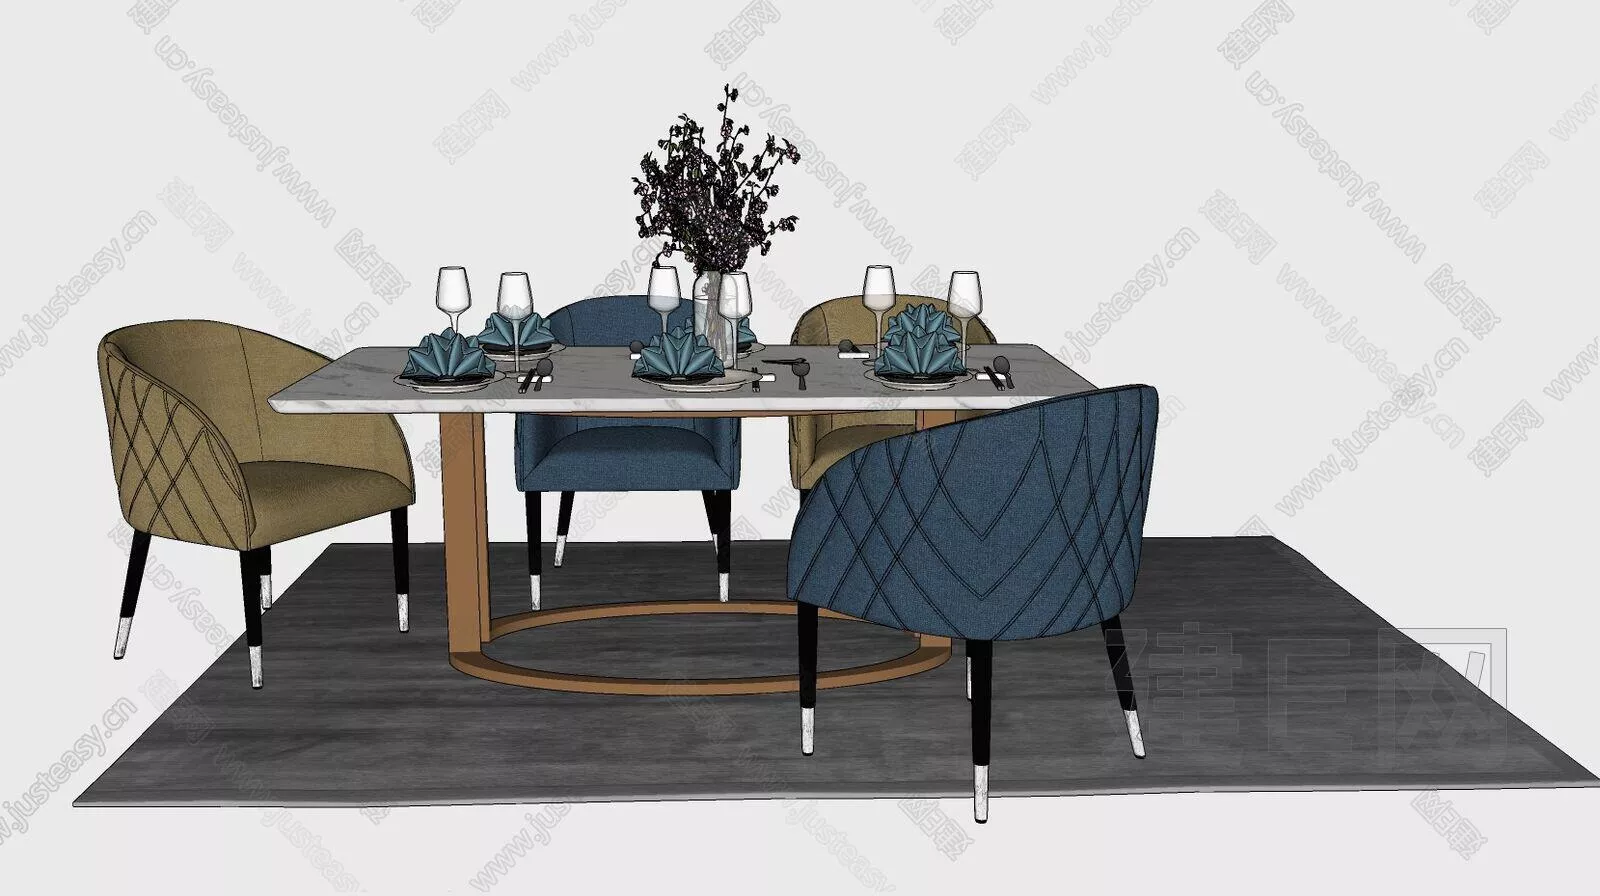 MODERN DINING TABLE SET - SKETCHUP 3D MODEL - ENSCAPE - 107233357